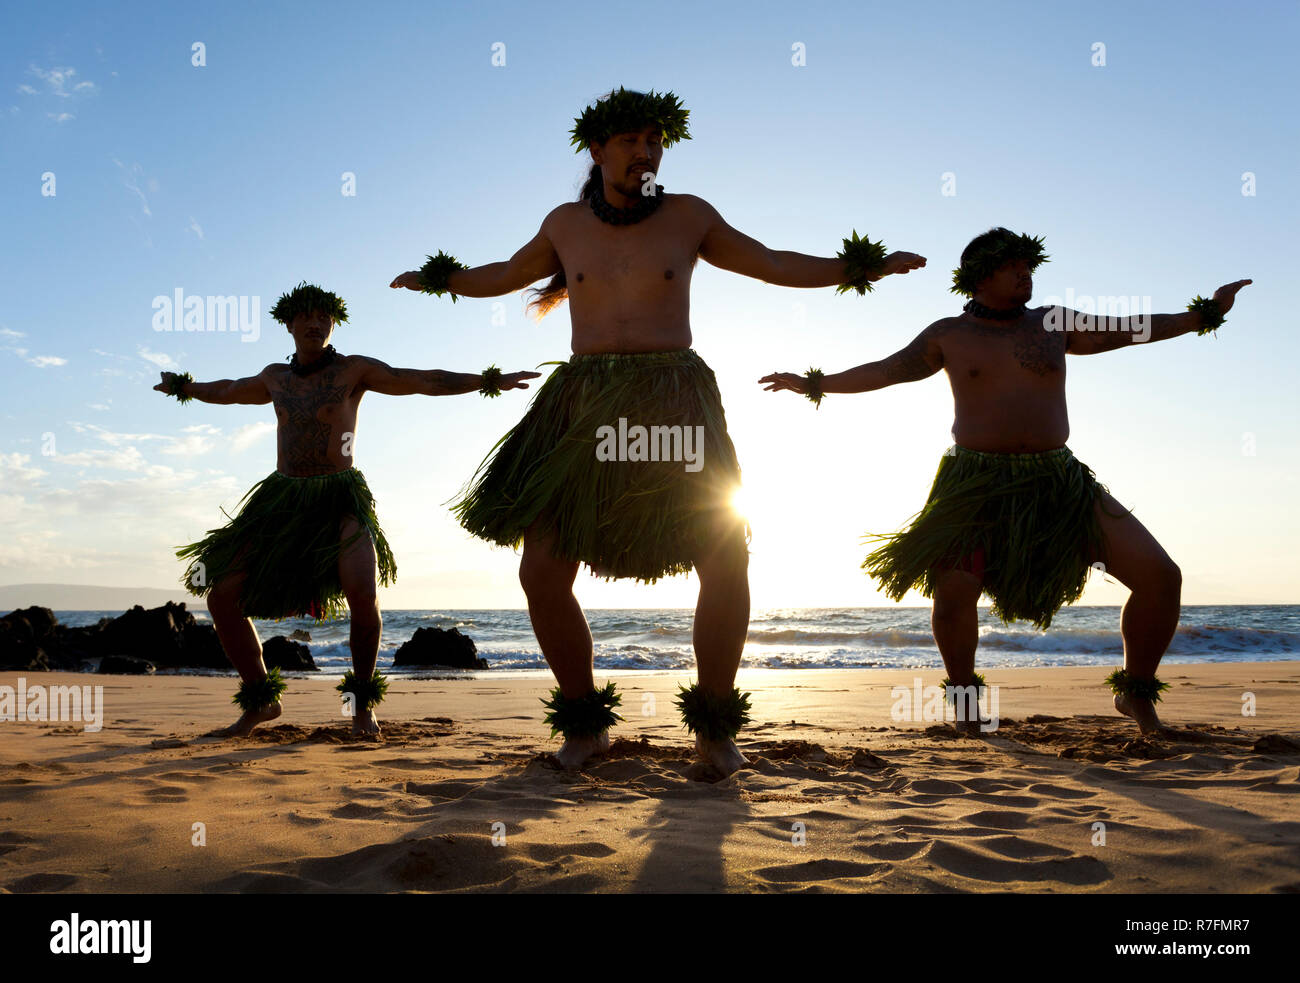 Three male hula dancers at sunset at Maui, Hawaii. Stock Photo